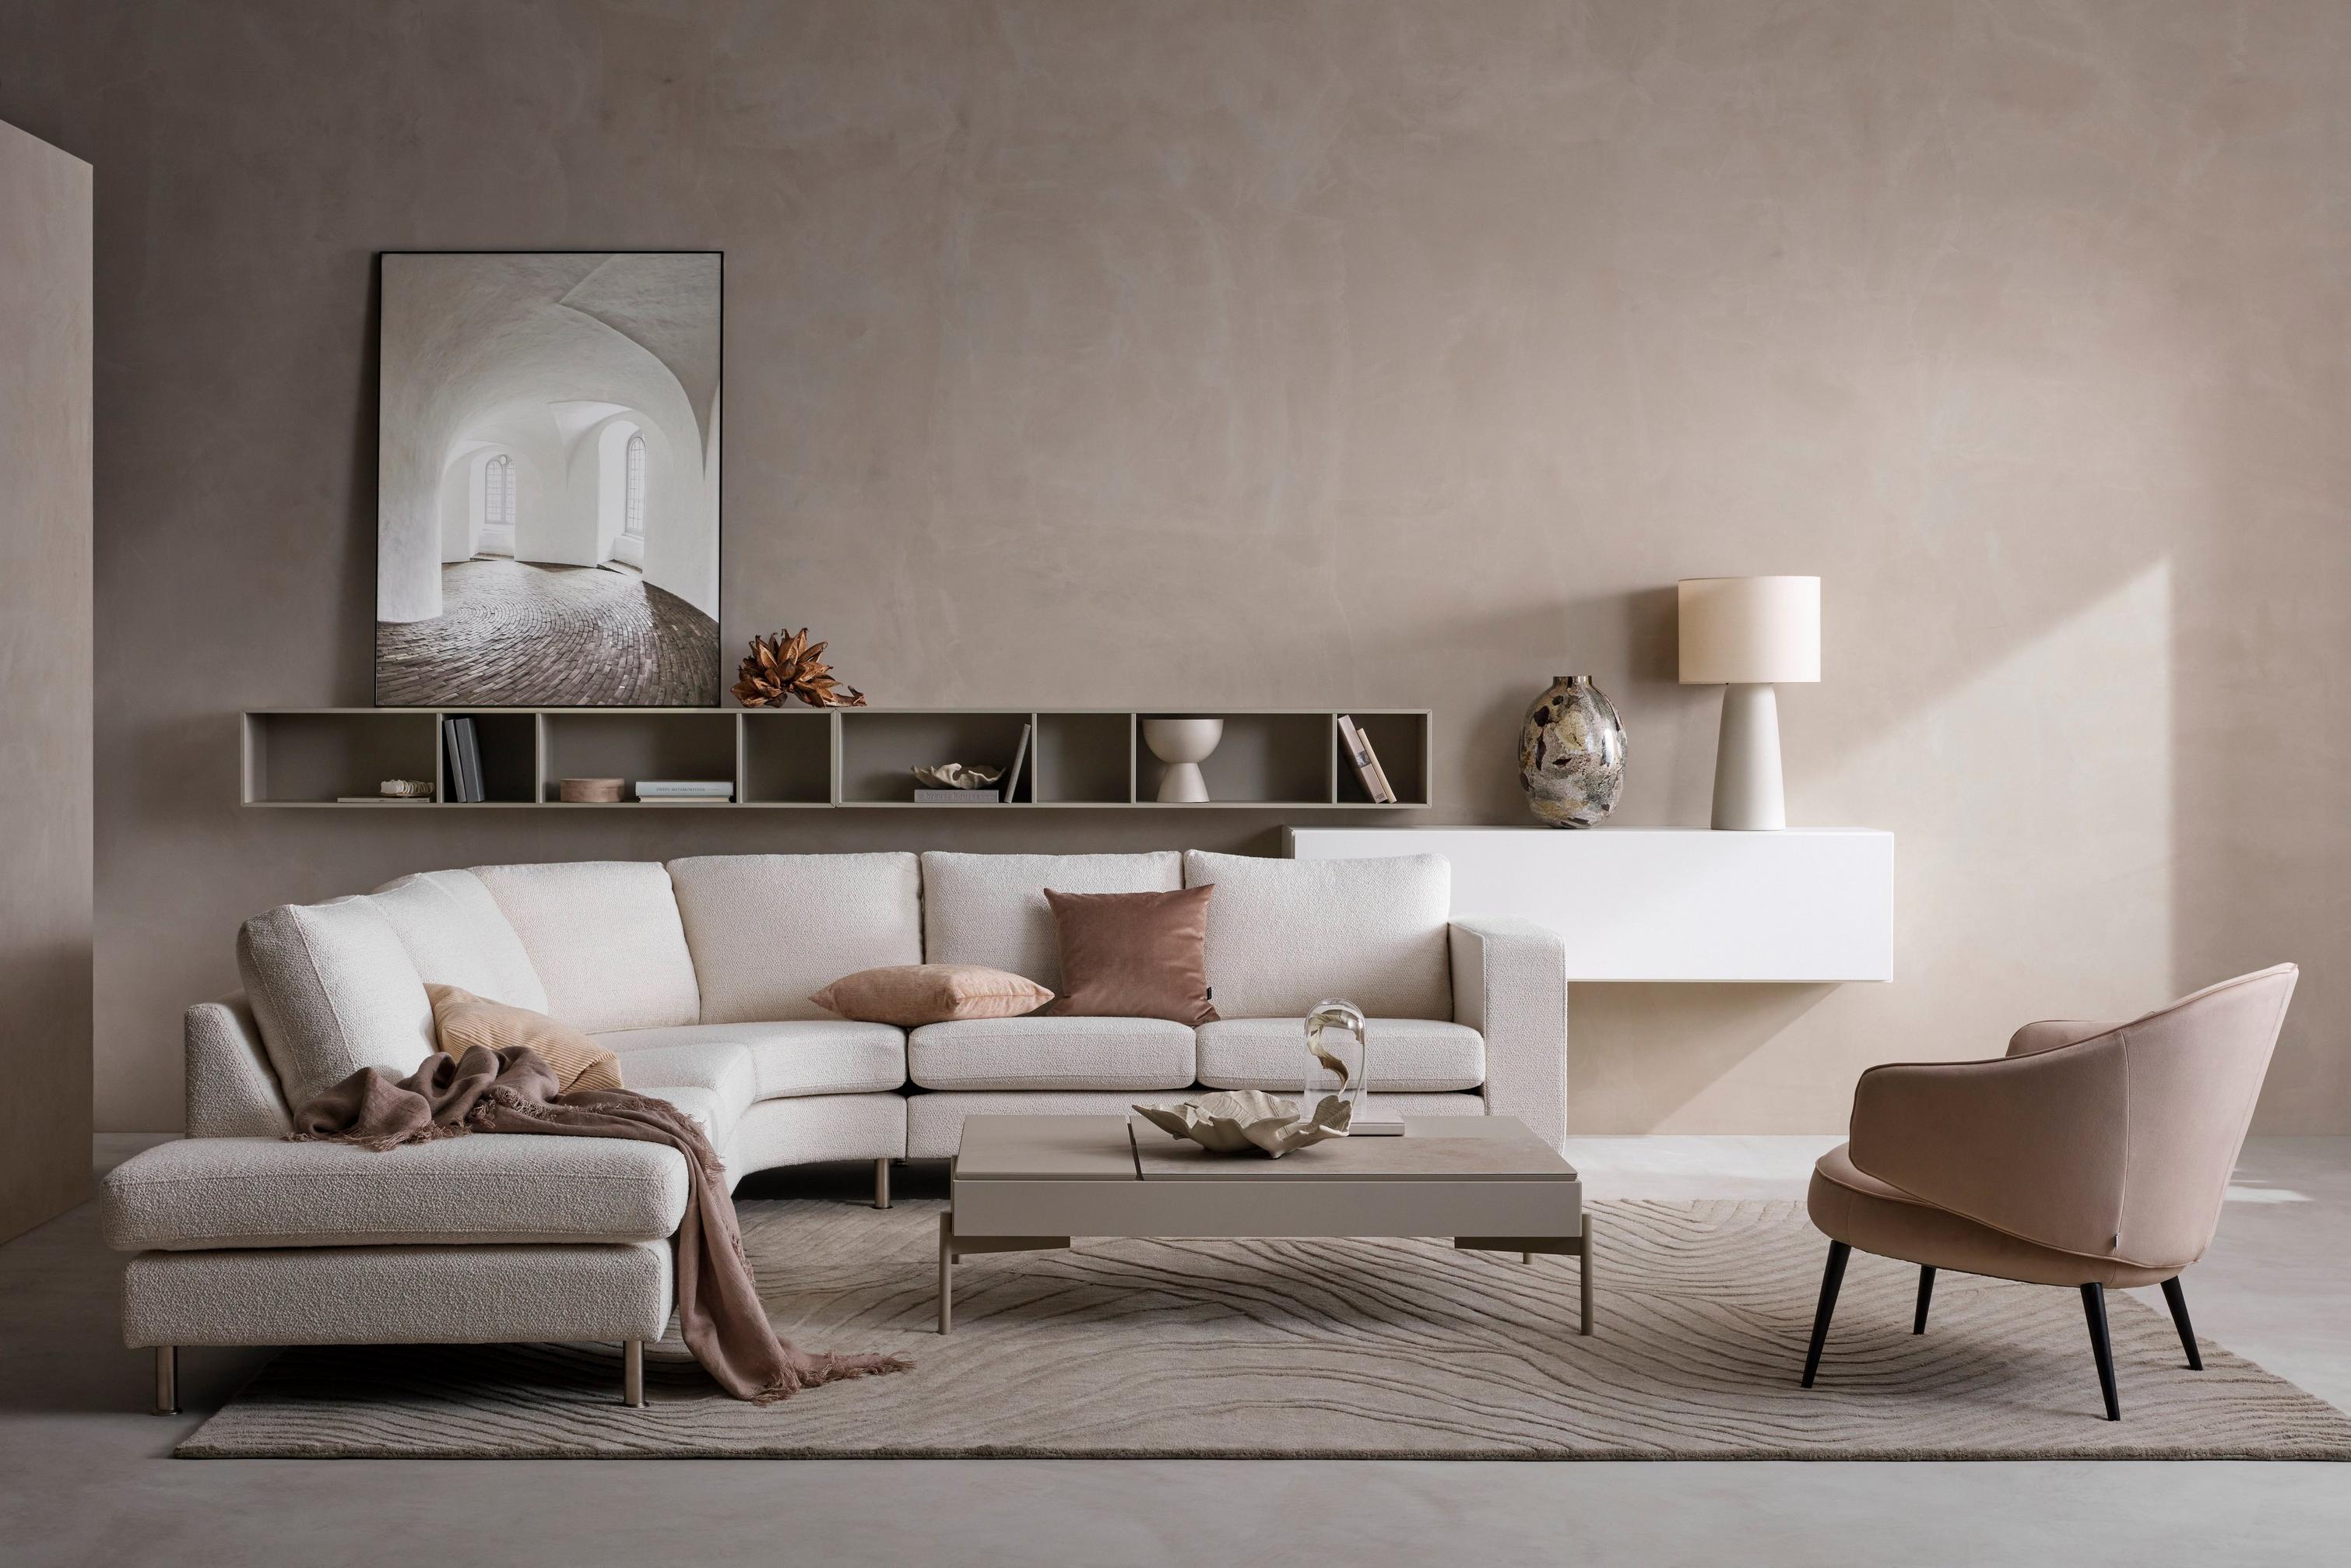 米色 Lazio 面料带圆形倚靠式单元 Indivi 沙发，搭配带储物空间的 Chiva 咖啡桌。